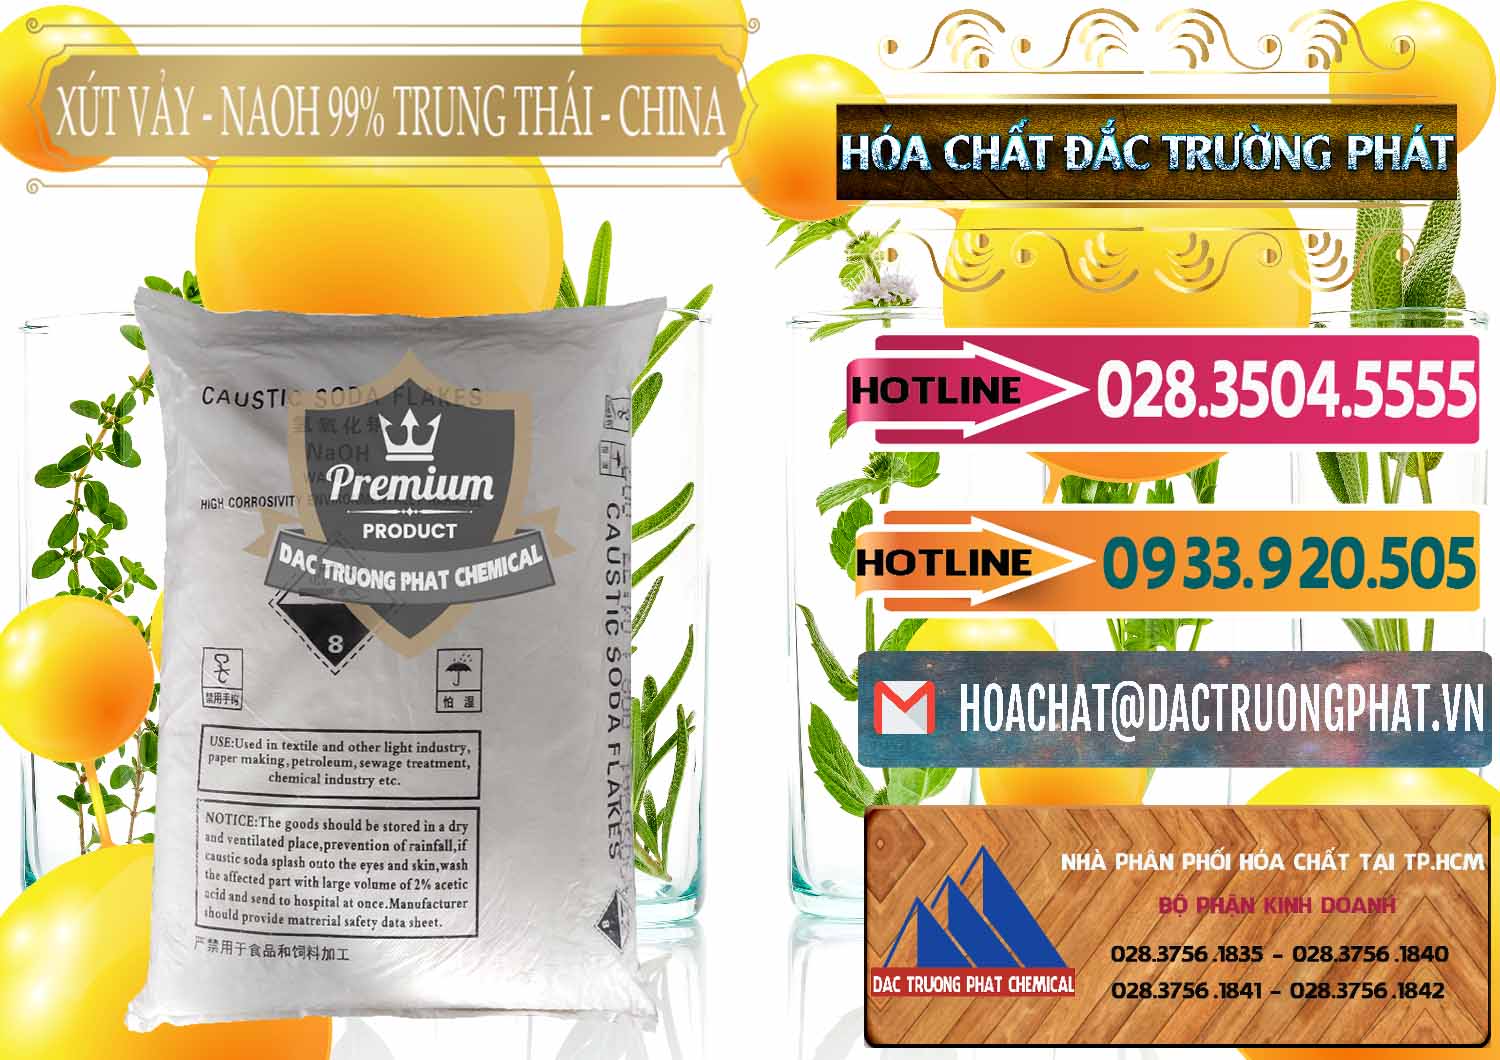 Cty kinh doanh và bán Xút Vảy - NaOH Vảy 99% Trung Thái China Trung Quốc - 0176 - Công ty chuyên cung ứng _ phân phối hóa chất tại TP.HCM - dactruongphat.vn